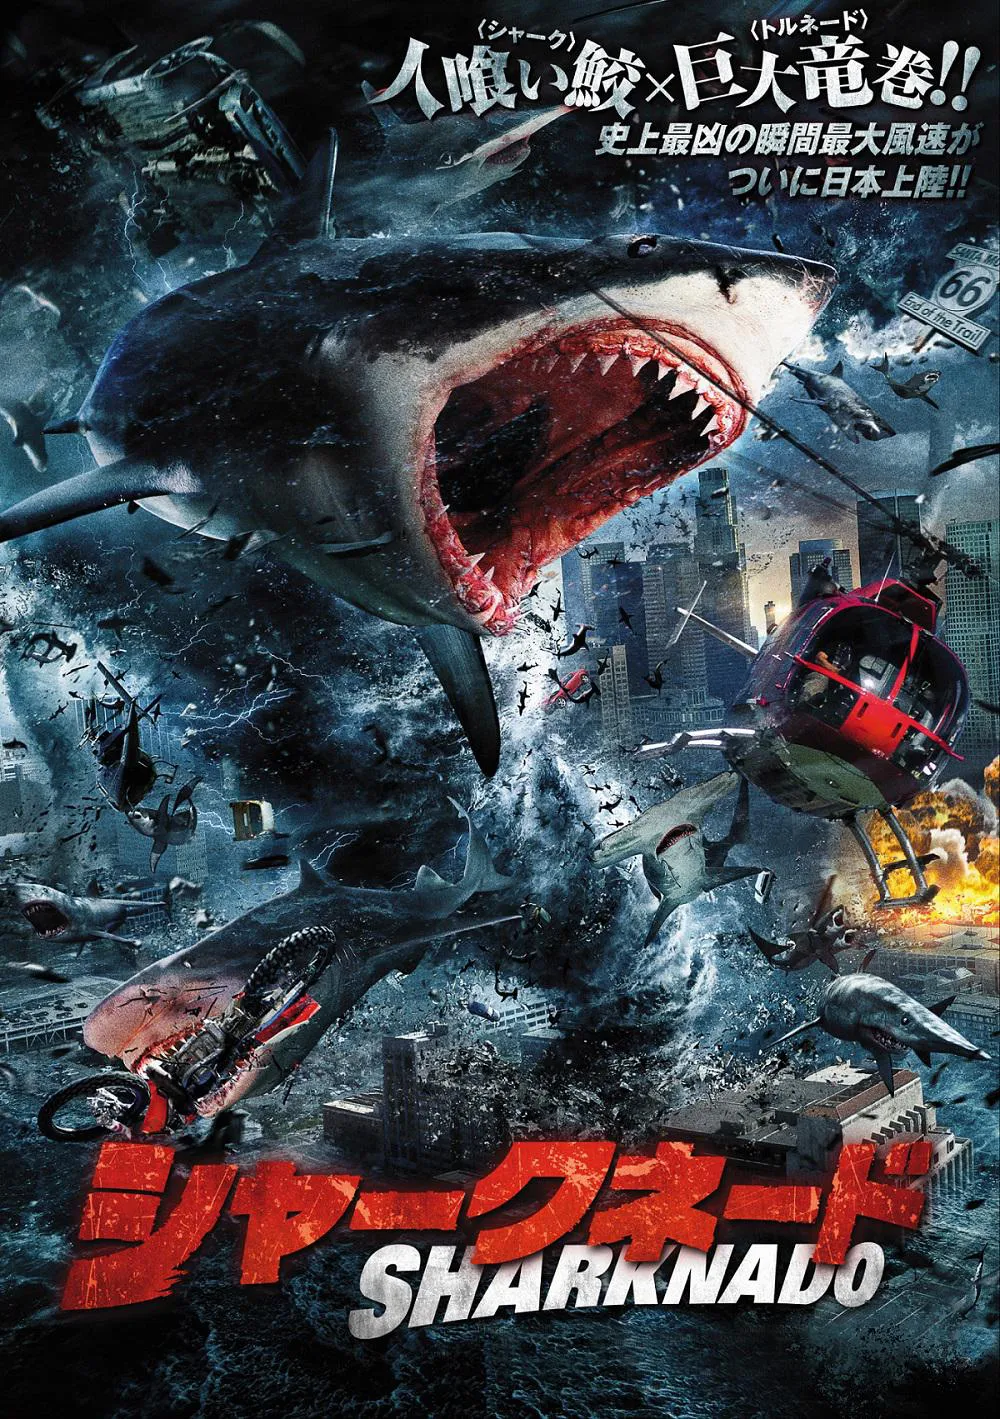 カルト的人気を誇るサメ映画「シャークネード」シリーズ全6作品を、BS12にて一挙放送！